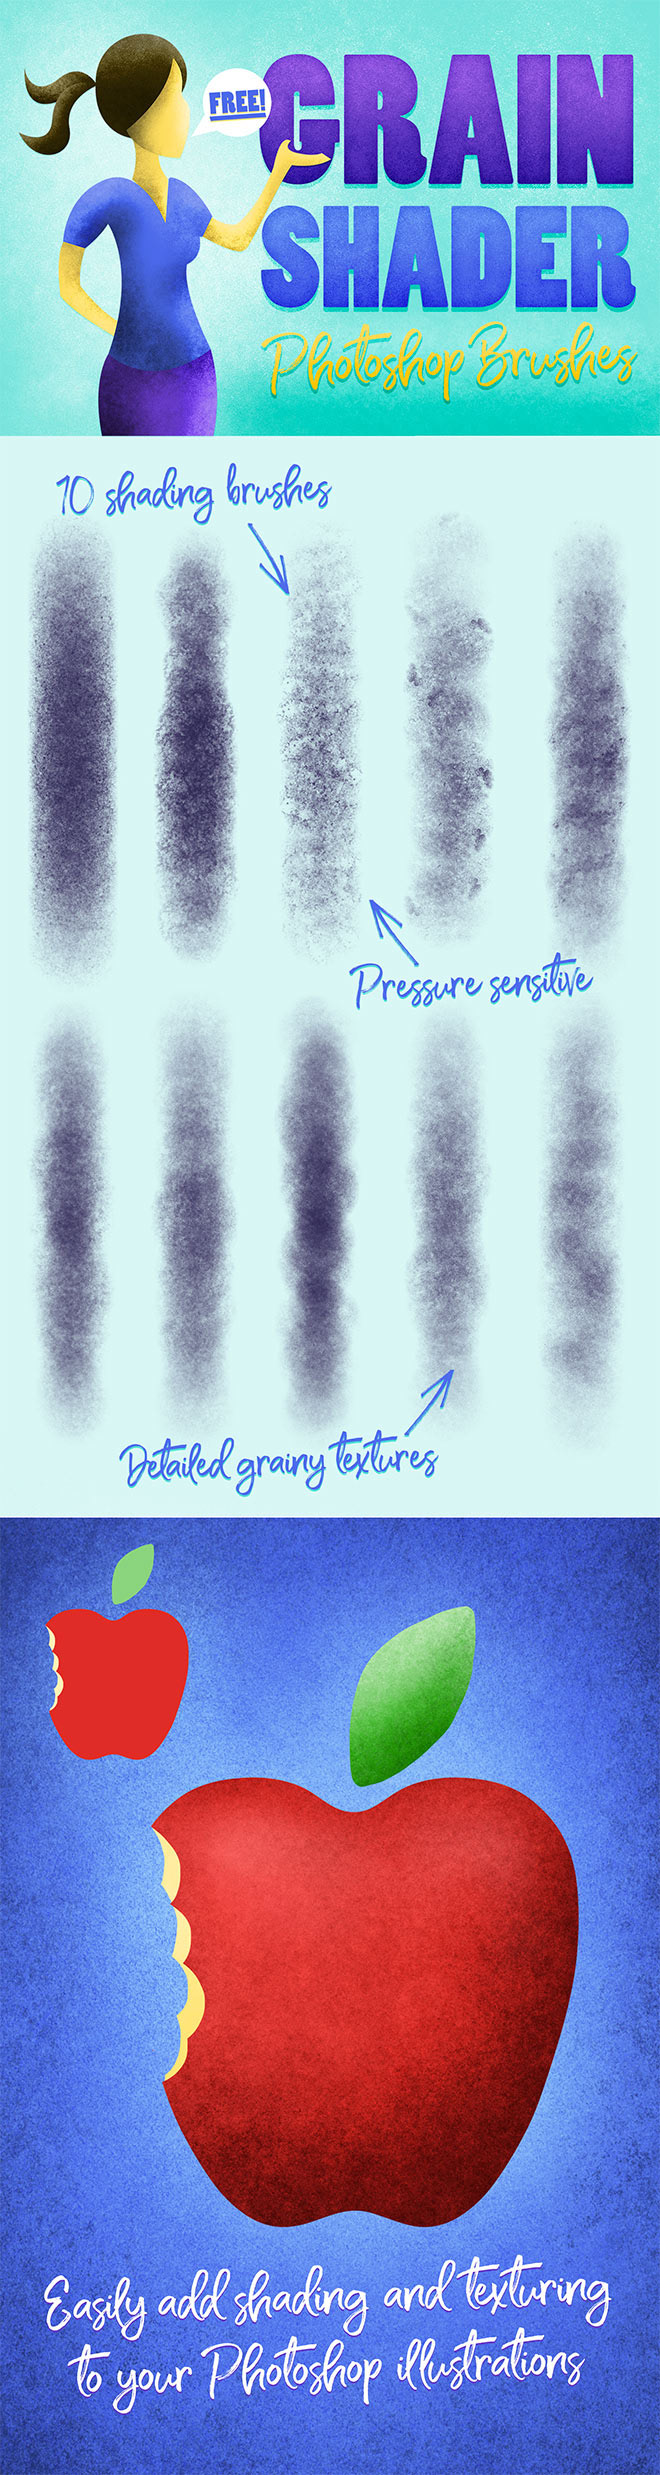 [PS预设]10种适用于阴影和纹理制作的笔刷 颗粒笔刷